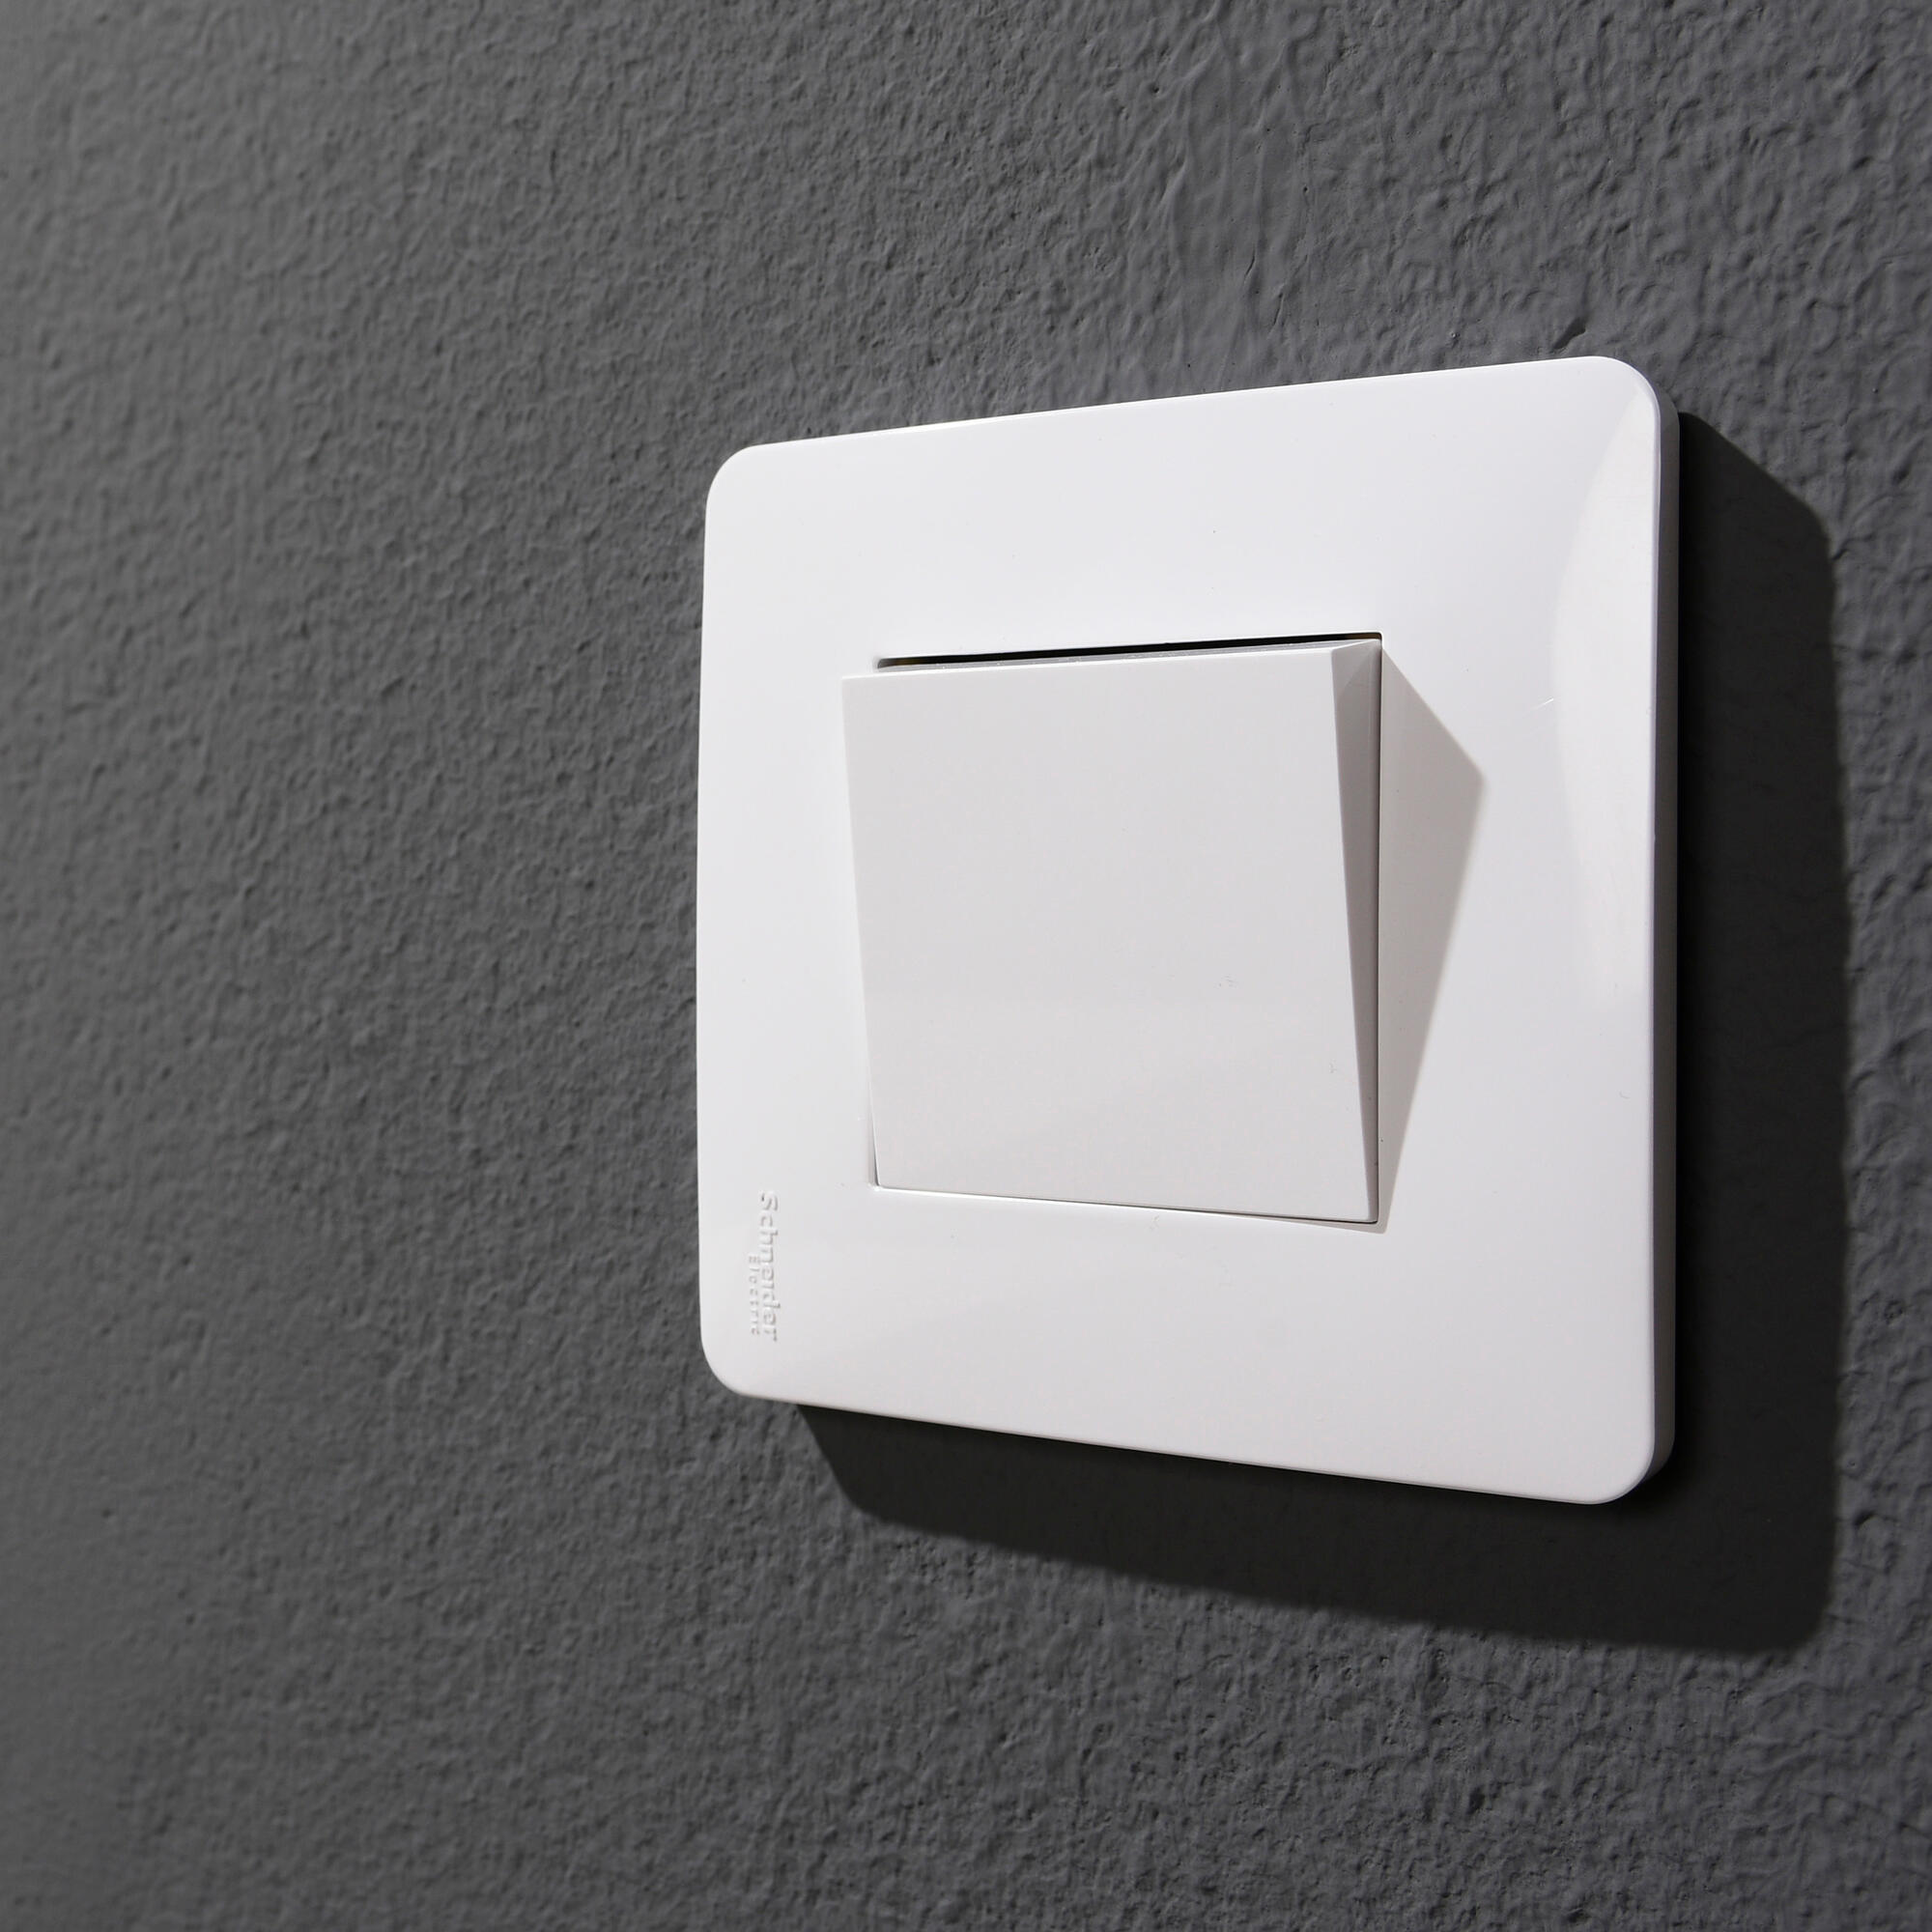 Serie Valena Next: interruptores y enchufes inteligentes que te conectan a  tu casa